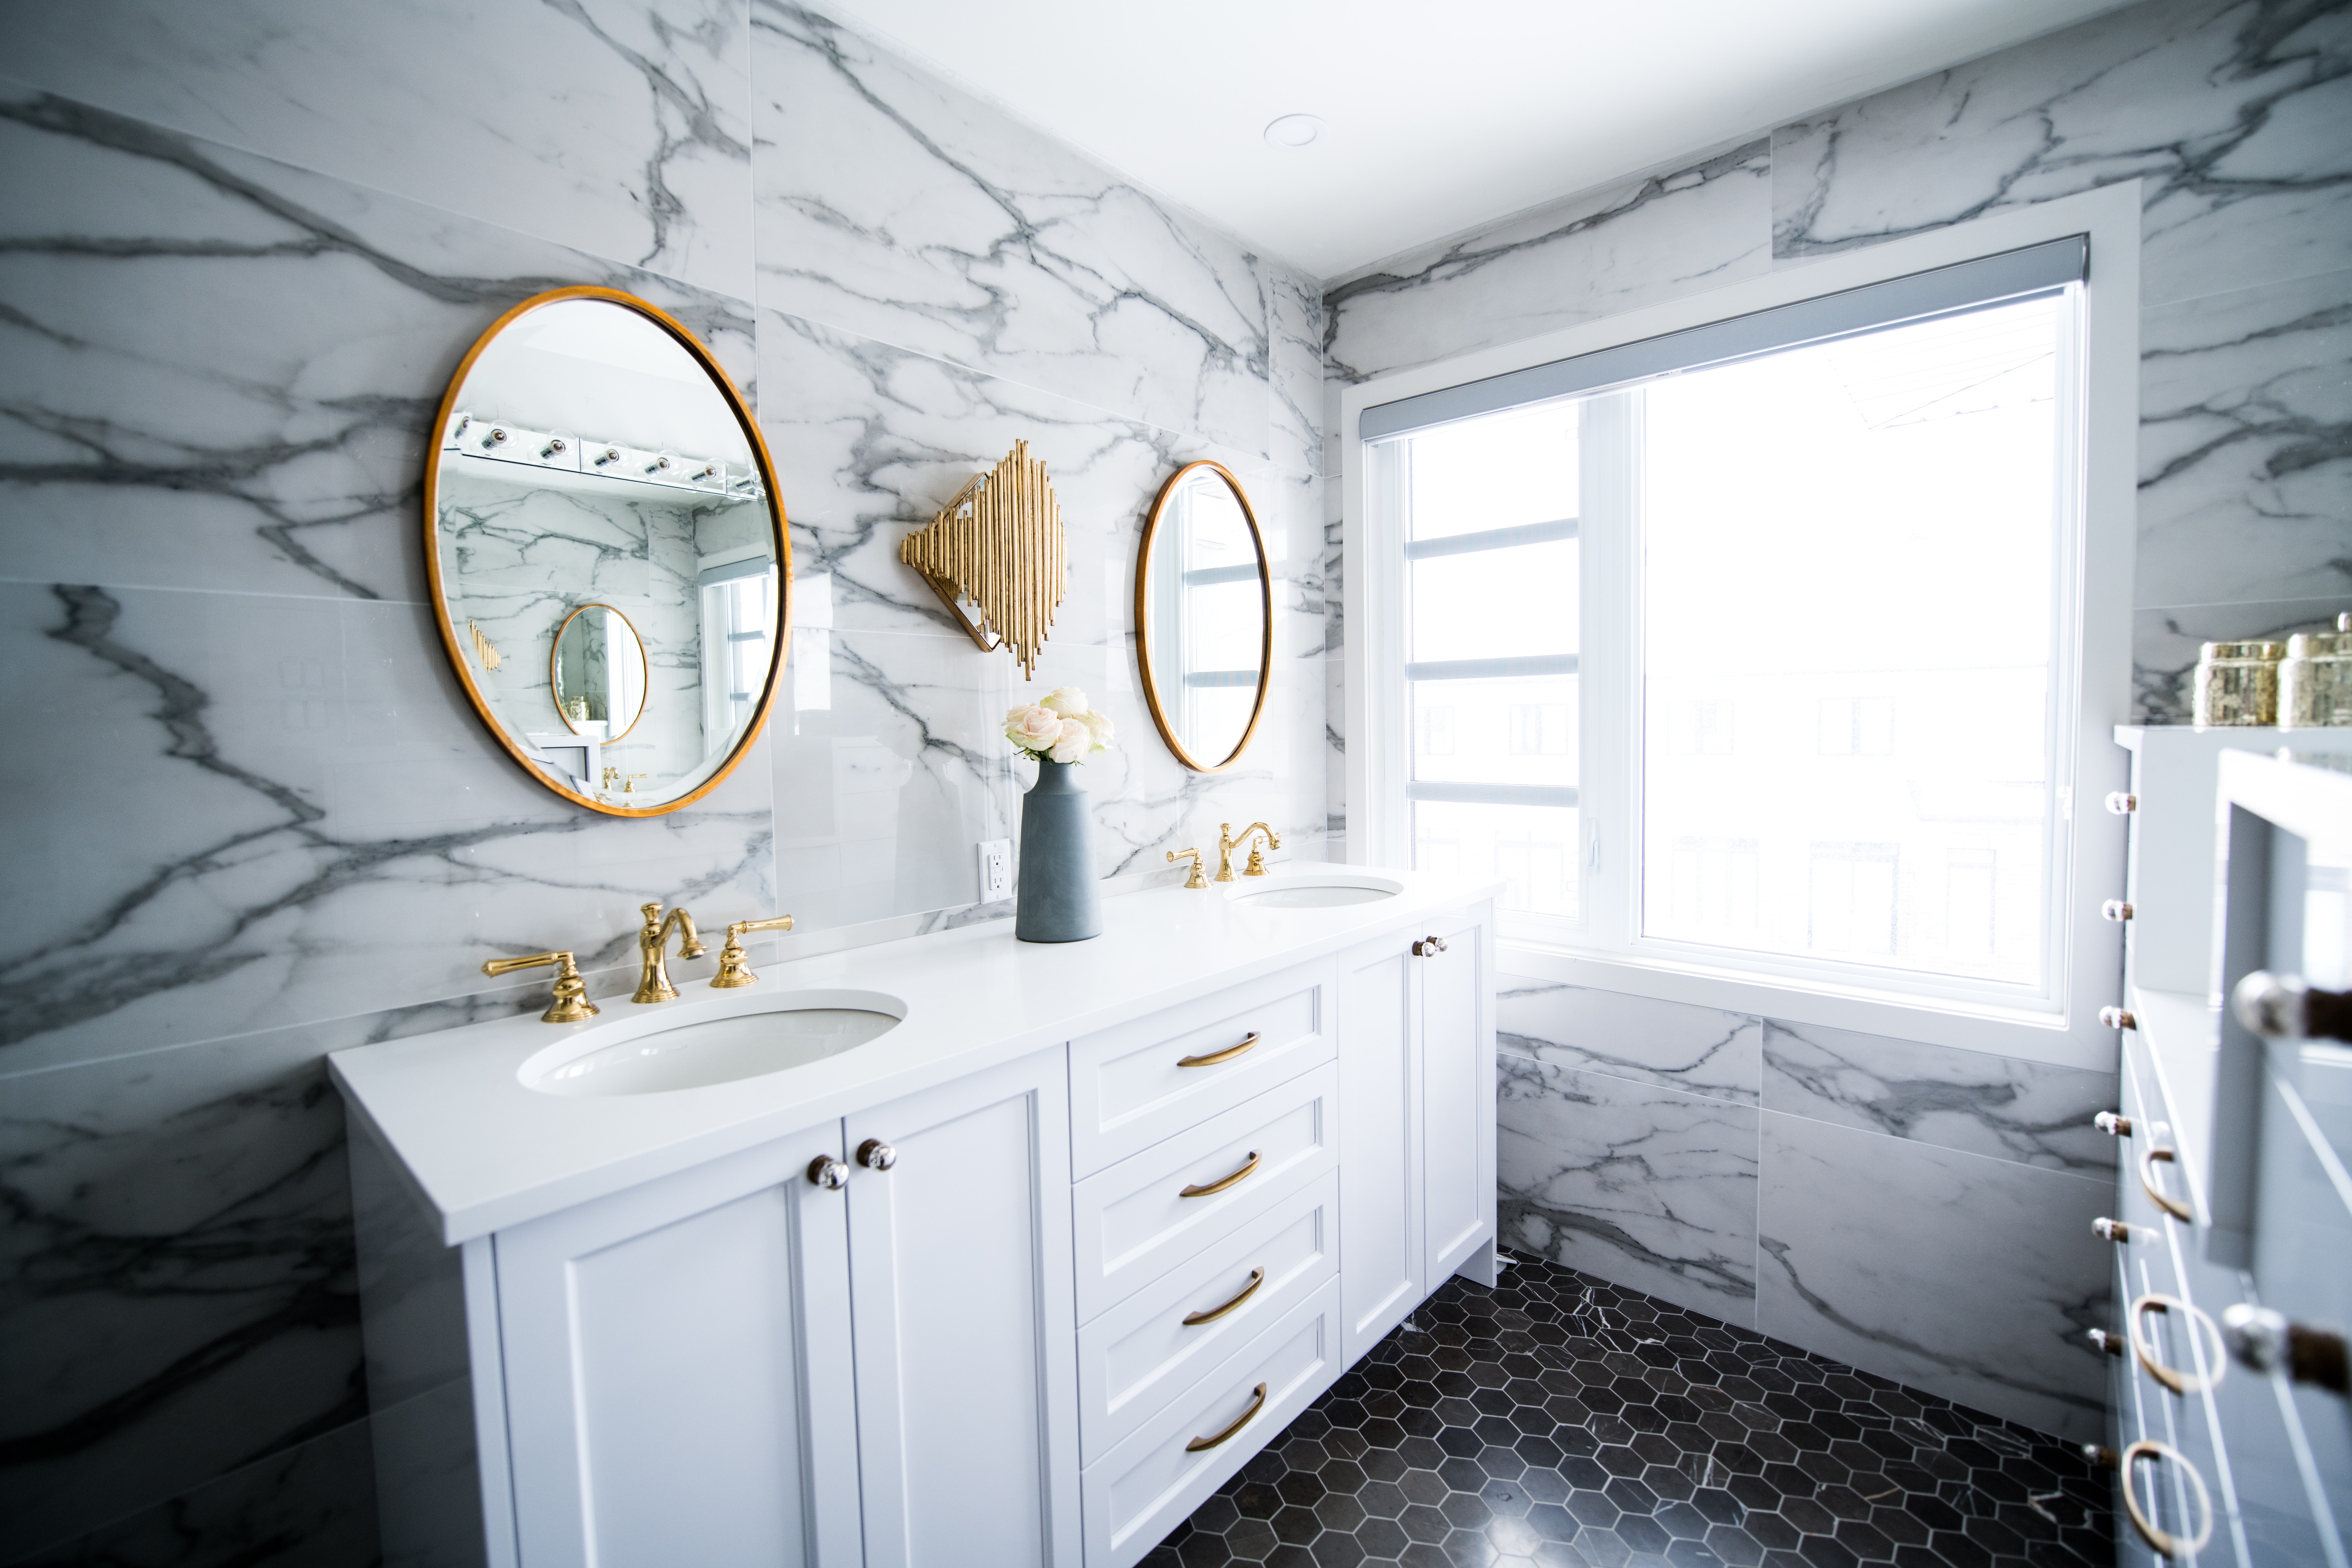 Bathroom Remodel, Tile Wall, hexagon pattern tile floor, Dual Sink Vanity, 70"